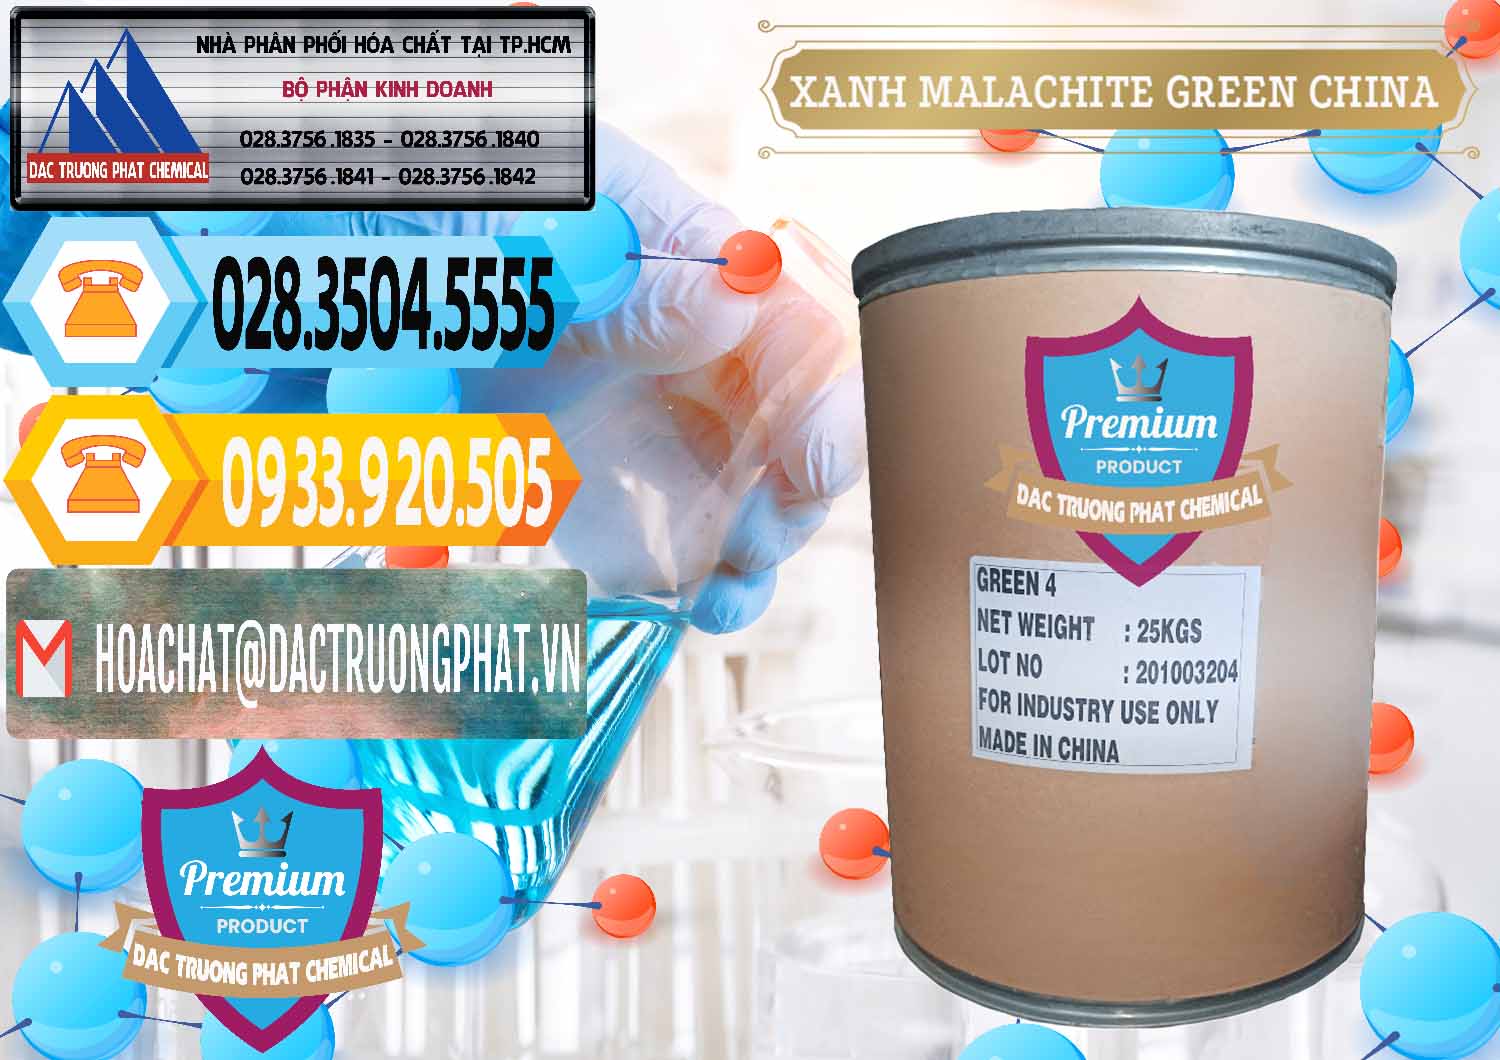 Cty chuyên bán _ phân phối Xanh Malachite Green Trung Quốc China - 0325 - Chuyên nhập khẩu & cung cấp hóa chất tại TP.HCM - hoachattayrua.net